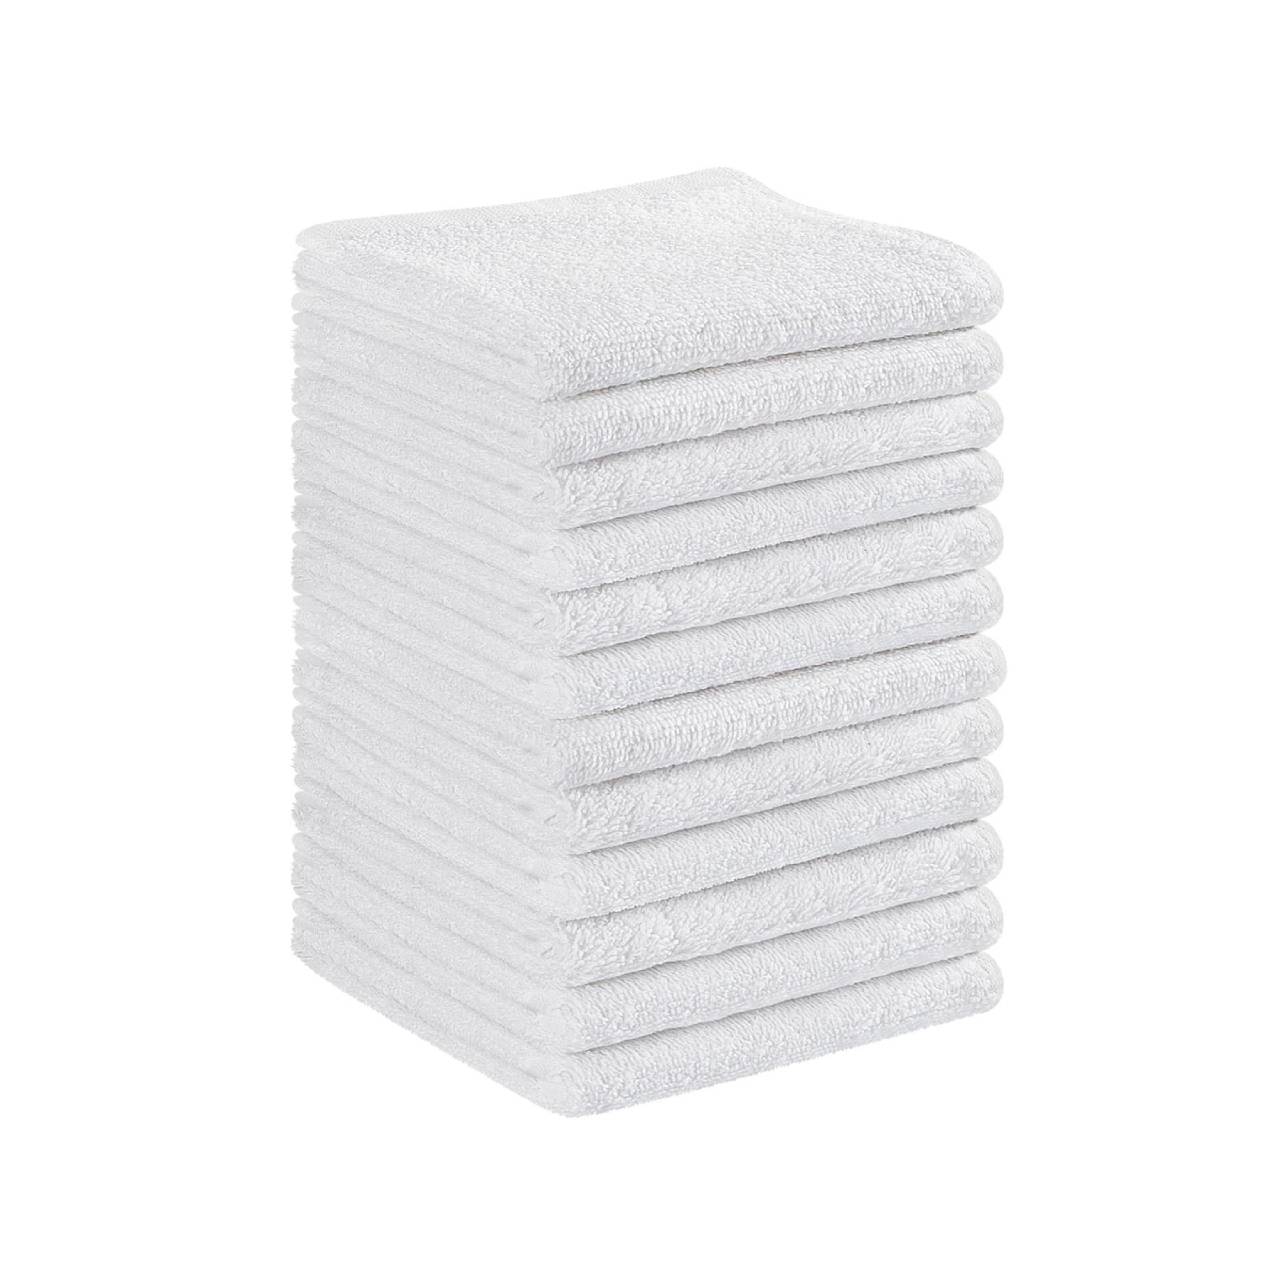 100% Cotton Premium Face Towels 10Pcs & 12Pcs Set, 30x30cm